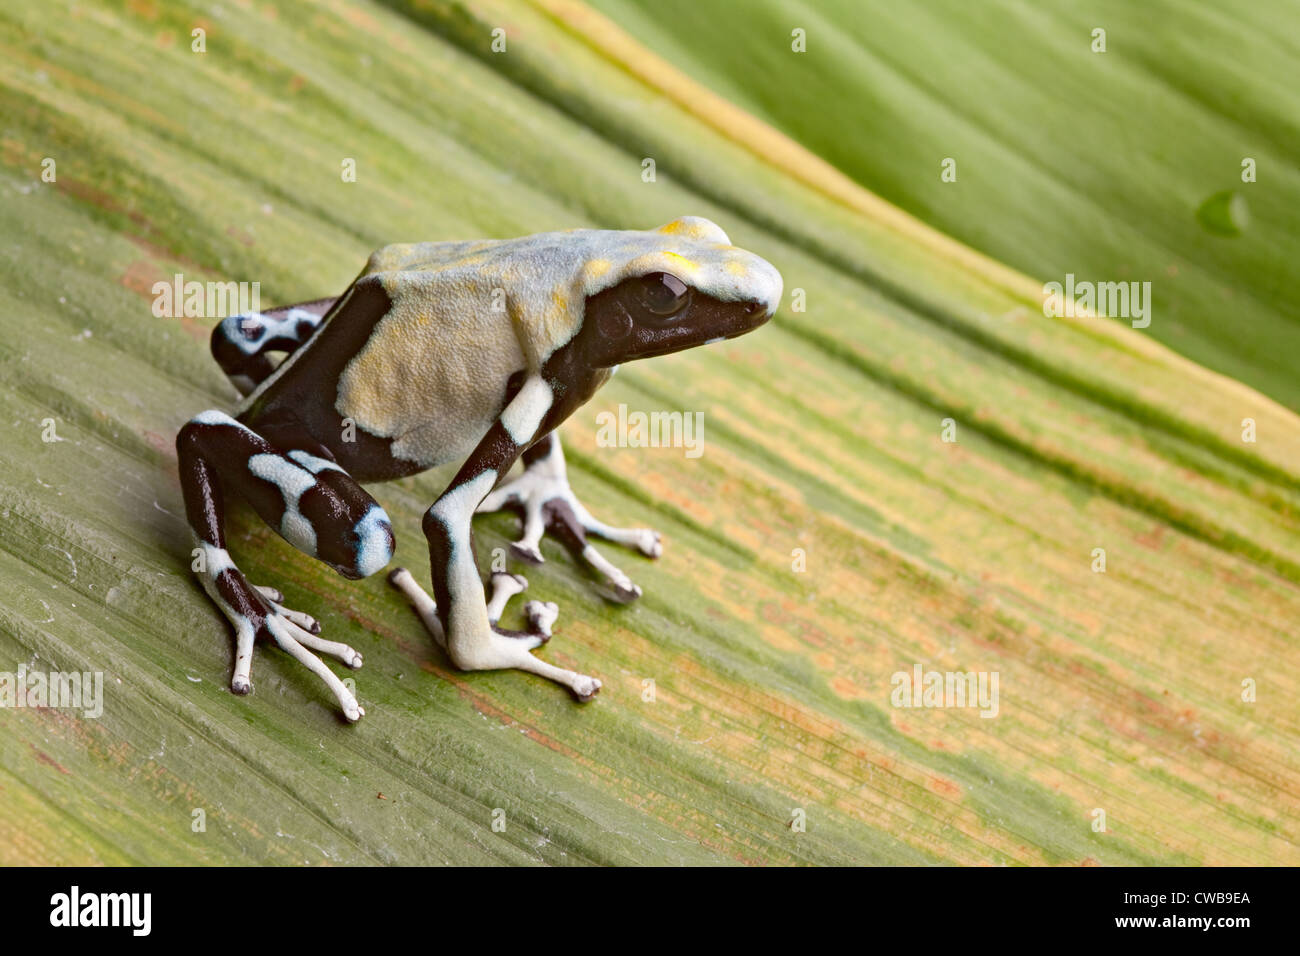 Frosch im tropischen Amazonas-Regenwald, Pfeilgiftfrosch, exotische Tiere  des Regenwaldes in Französisch-Guyana, Suriname und Brasilien  Stockfotografie - Alamy